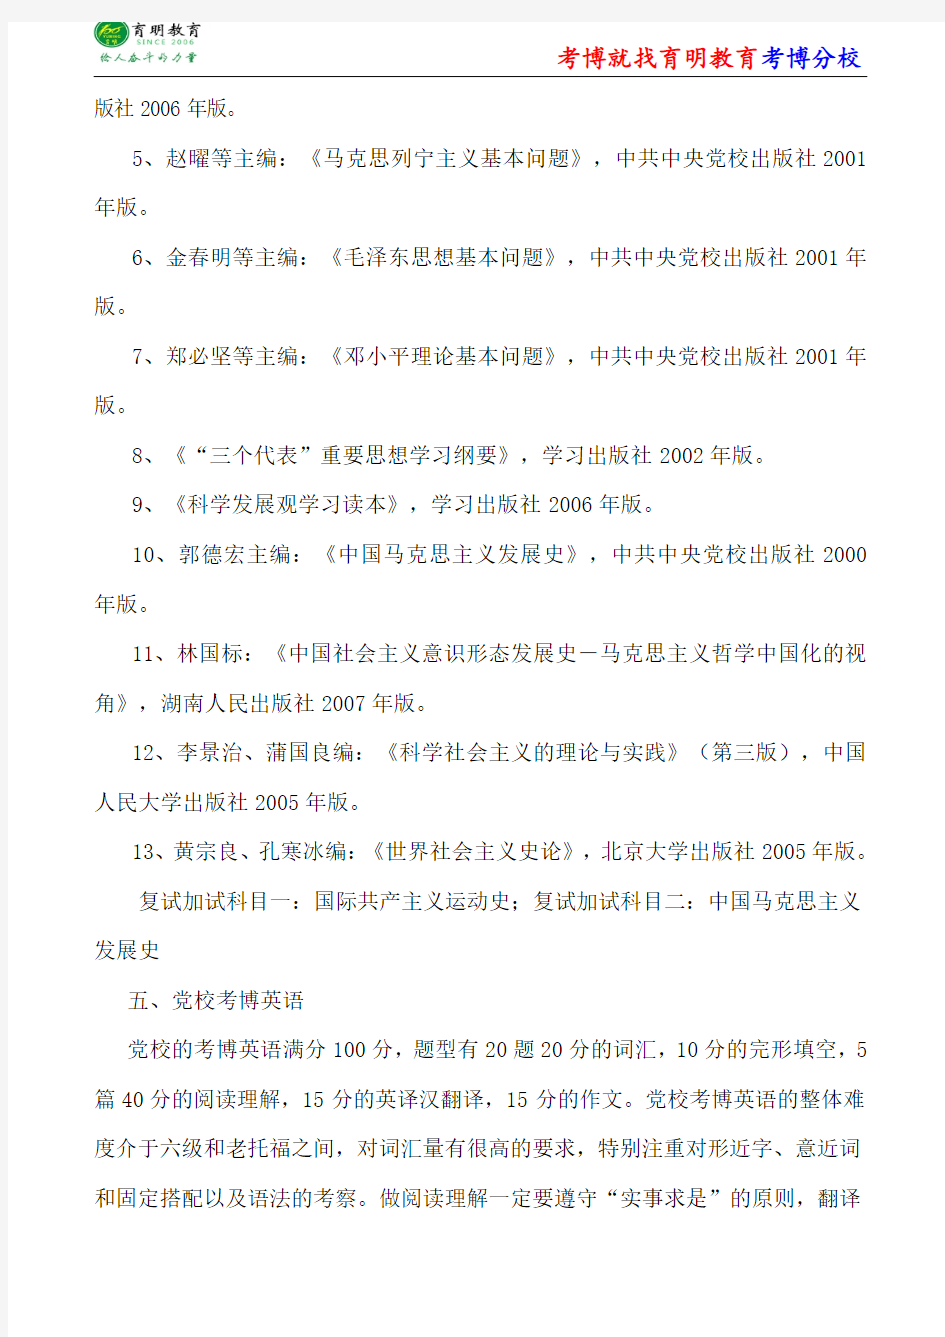 中共中央党校马克思主义中国化考博笔记-考博重点-考博经验